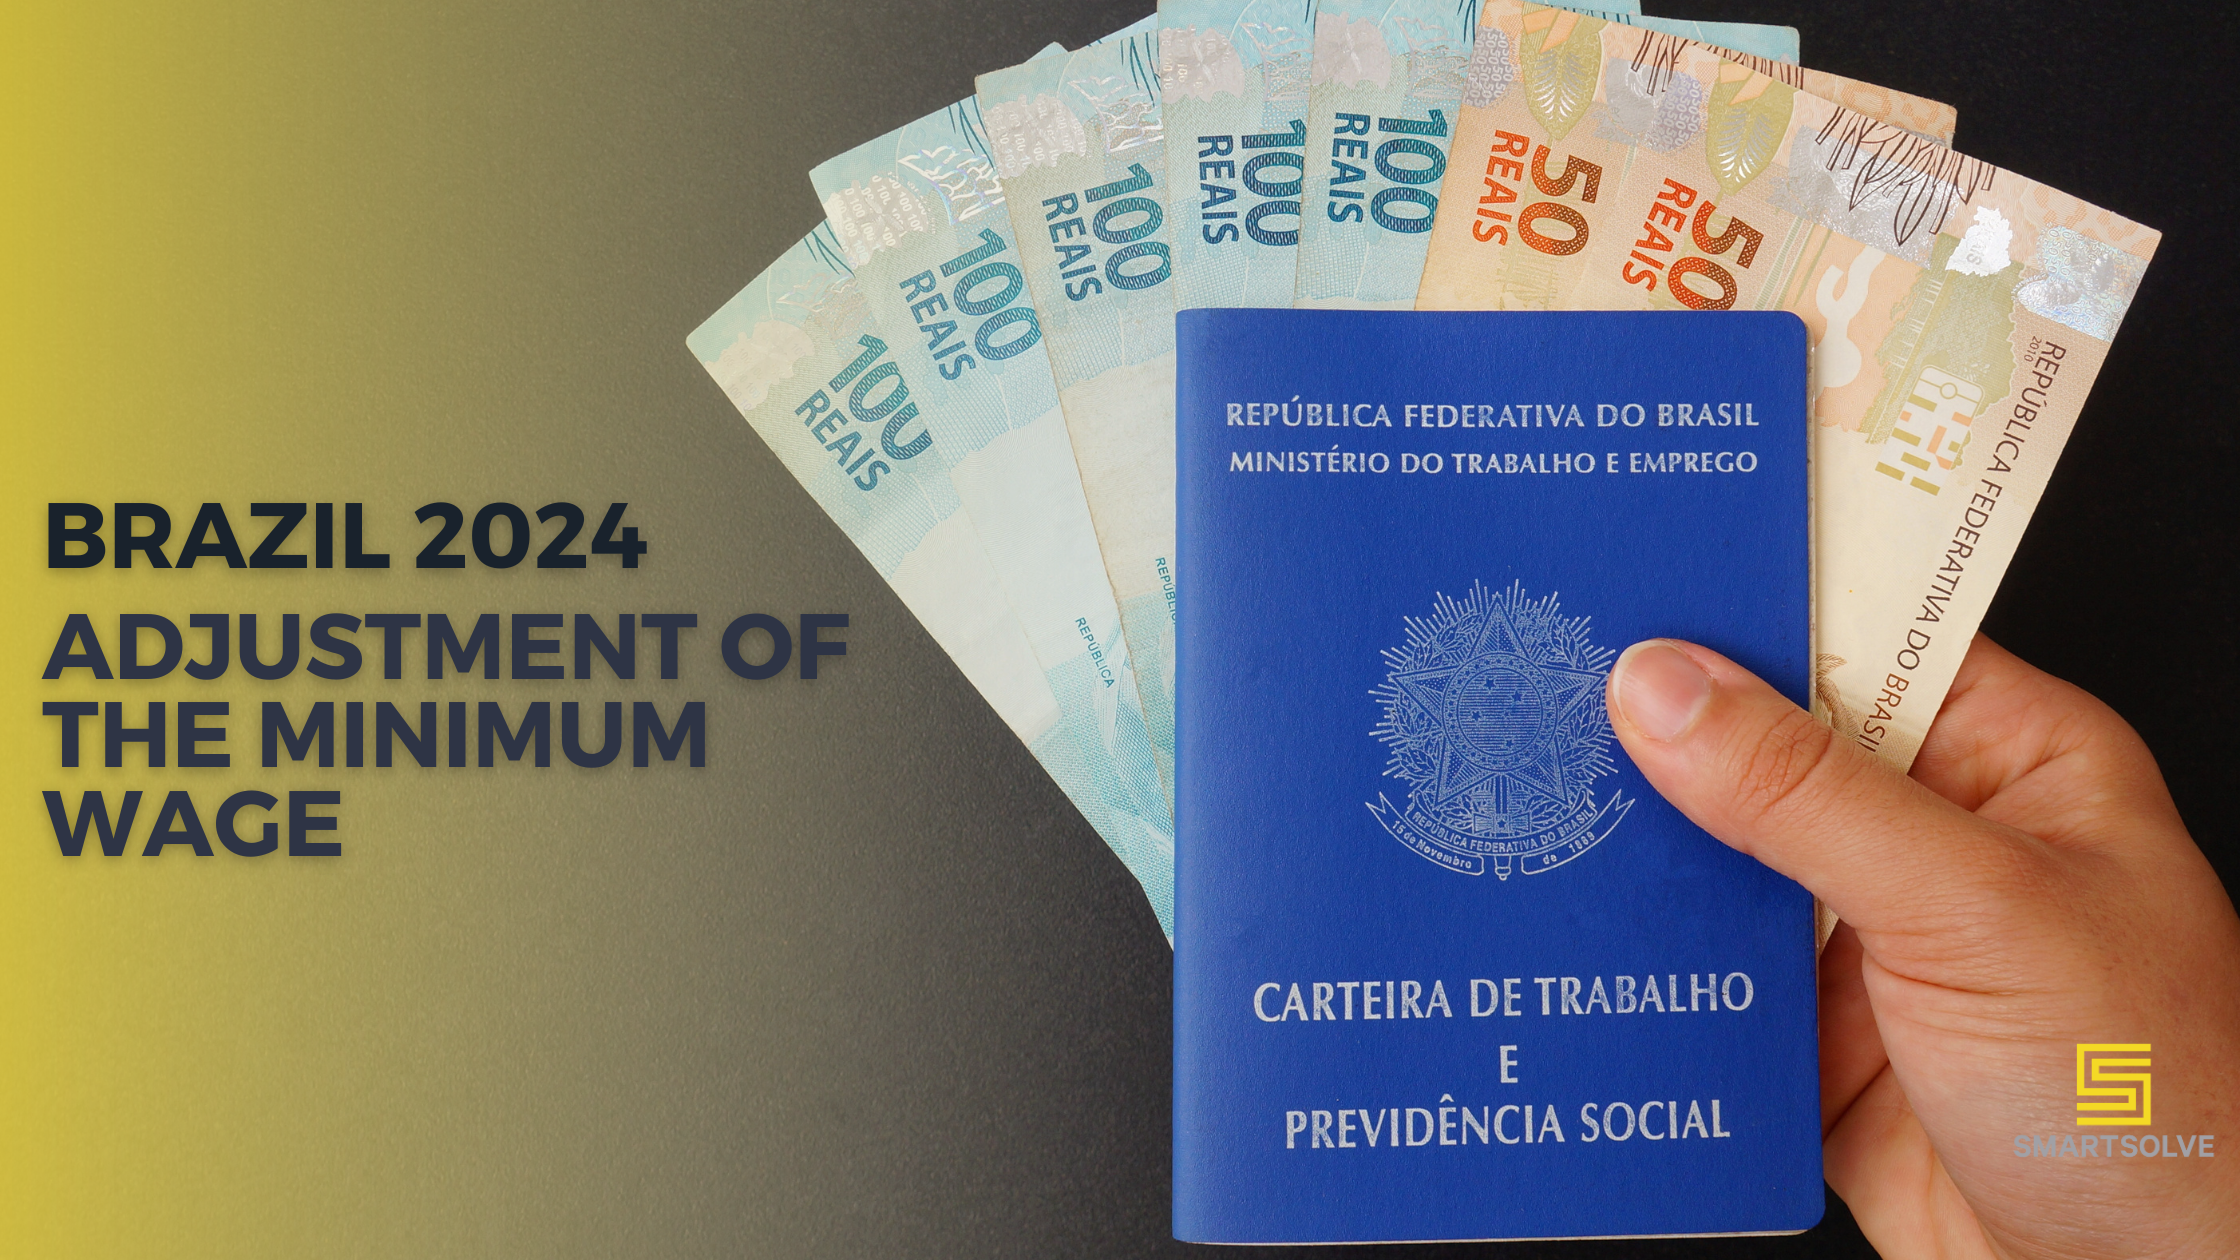 Brasil 2024 Reajuste Do Salario Minimo - SmartSolve